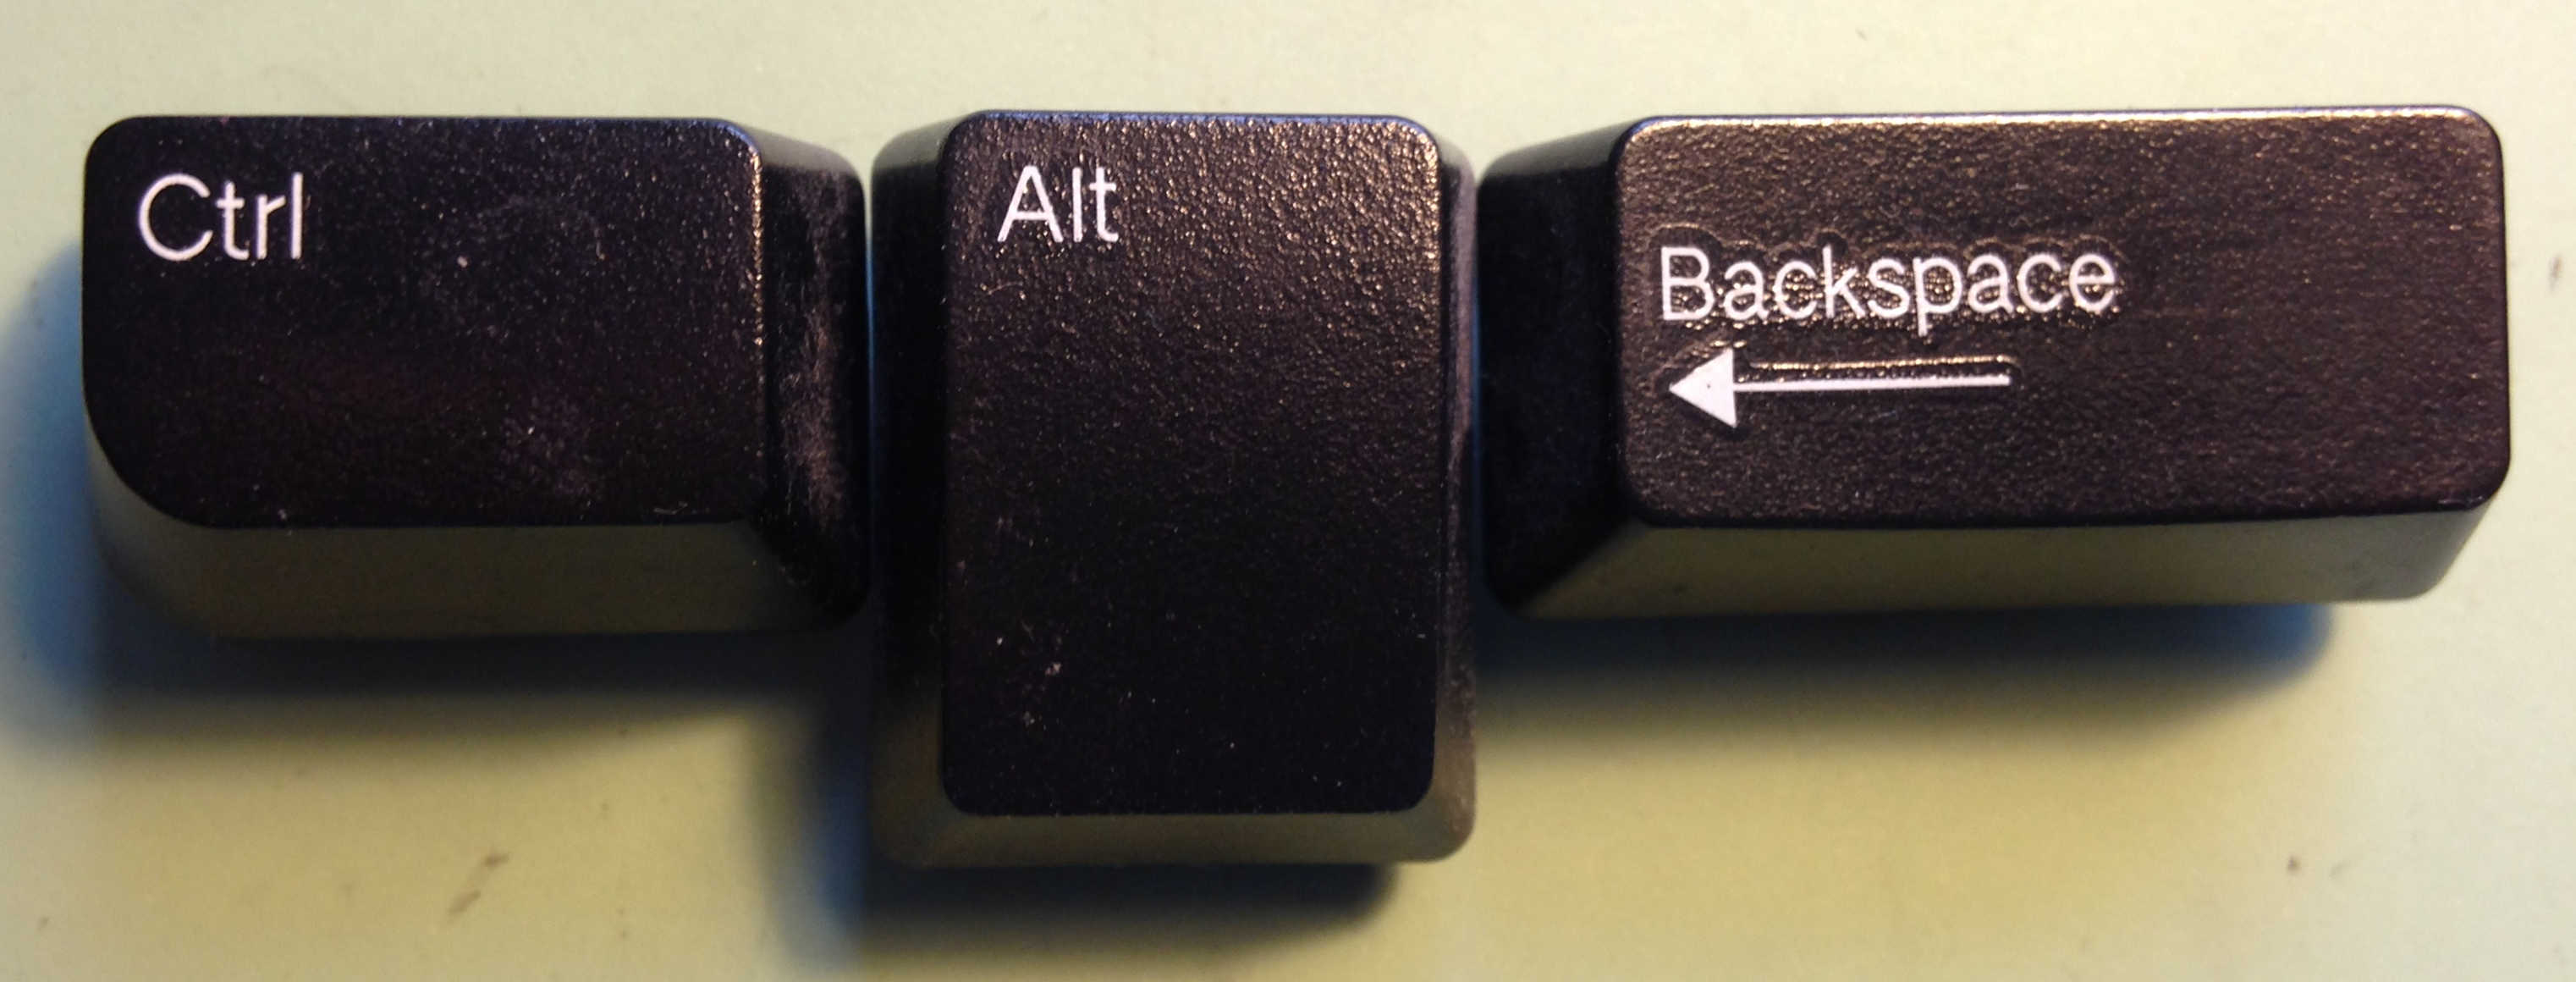 Arranged Ctrl-Alt-Backspace keys.